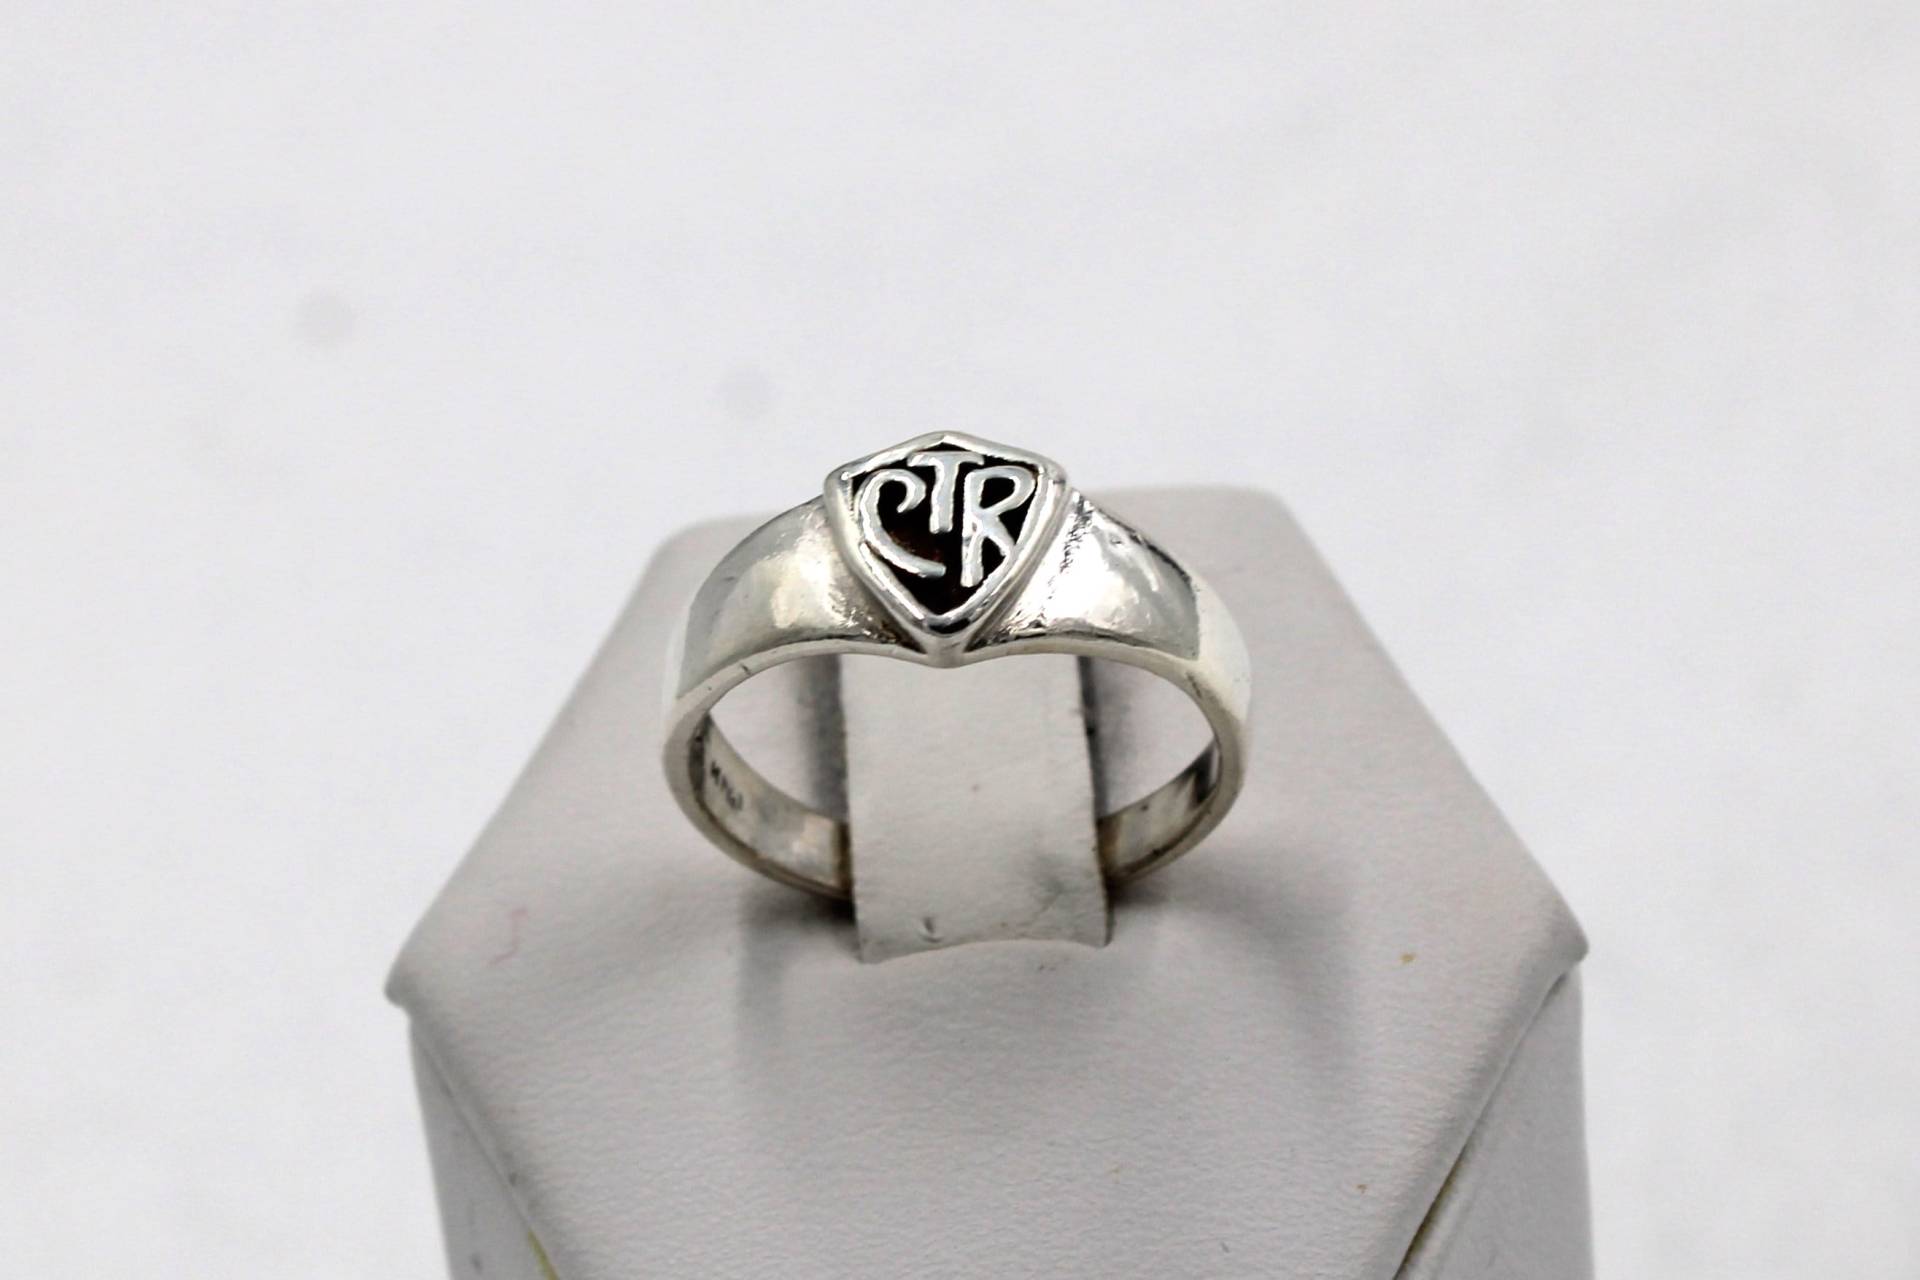 Schlichter Vintage Ctr Massiv Sterling Silber Signet Ring Größe 7 1/4 Versandkostenfrei #h725-L2 von rubysvintagejewelry